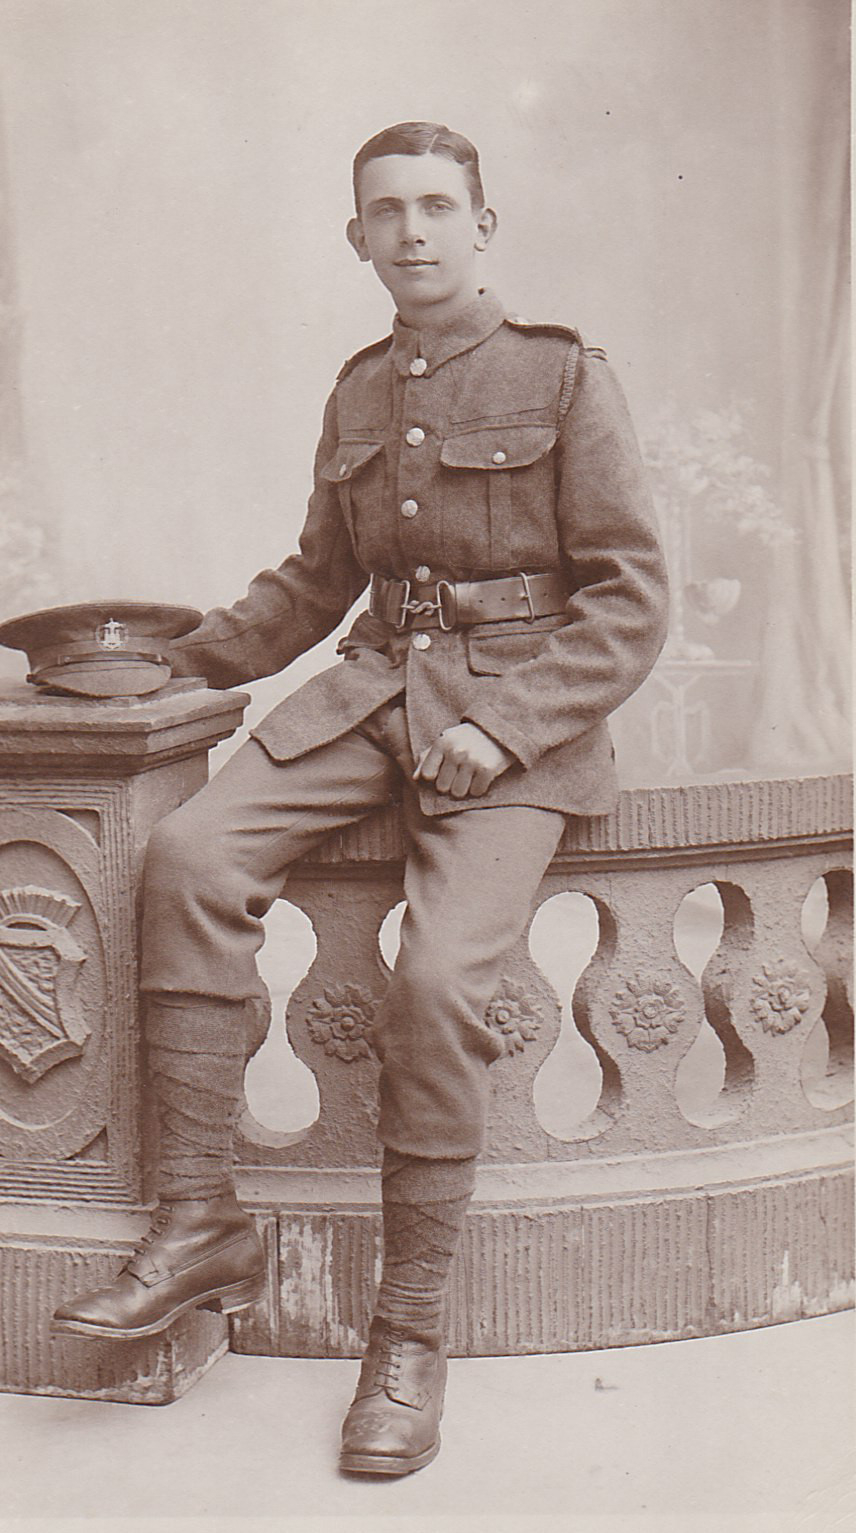 Private Leslie Arthur Misselbrook